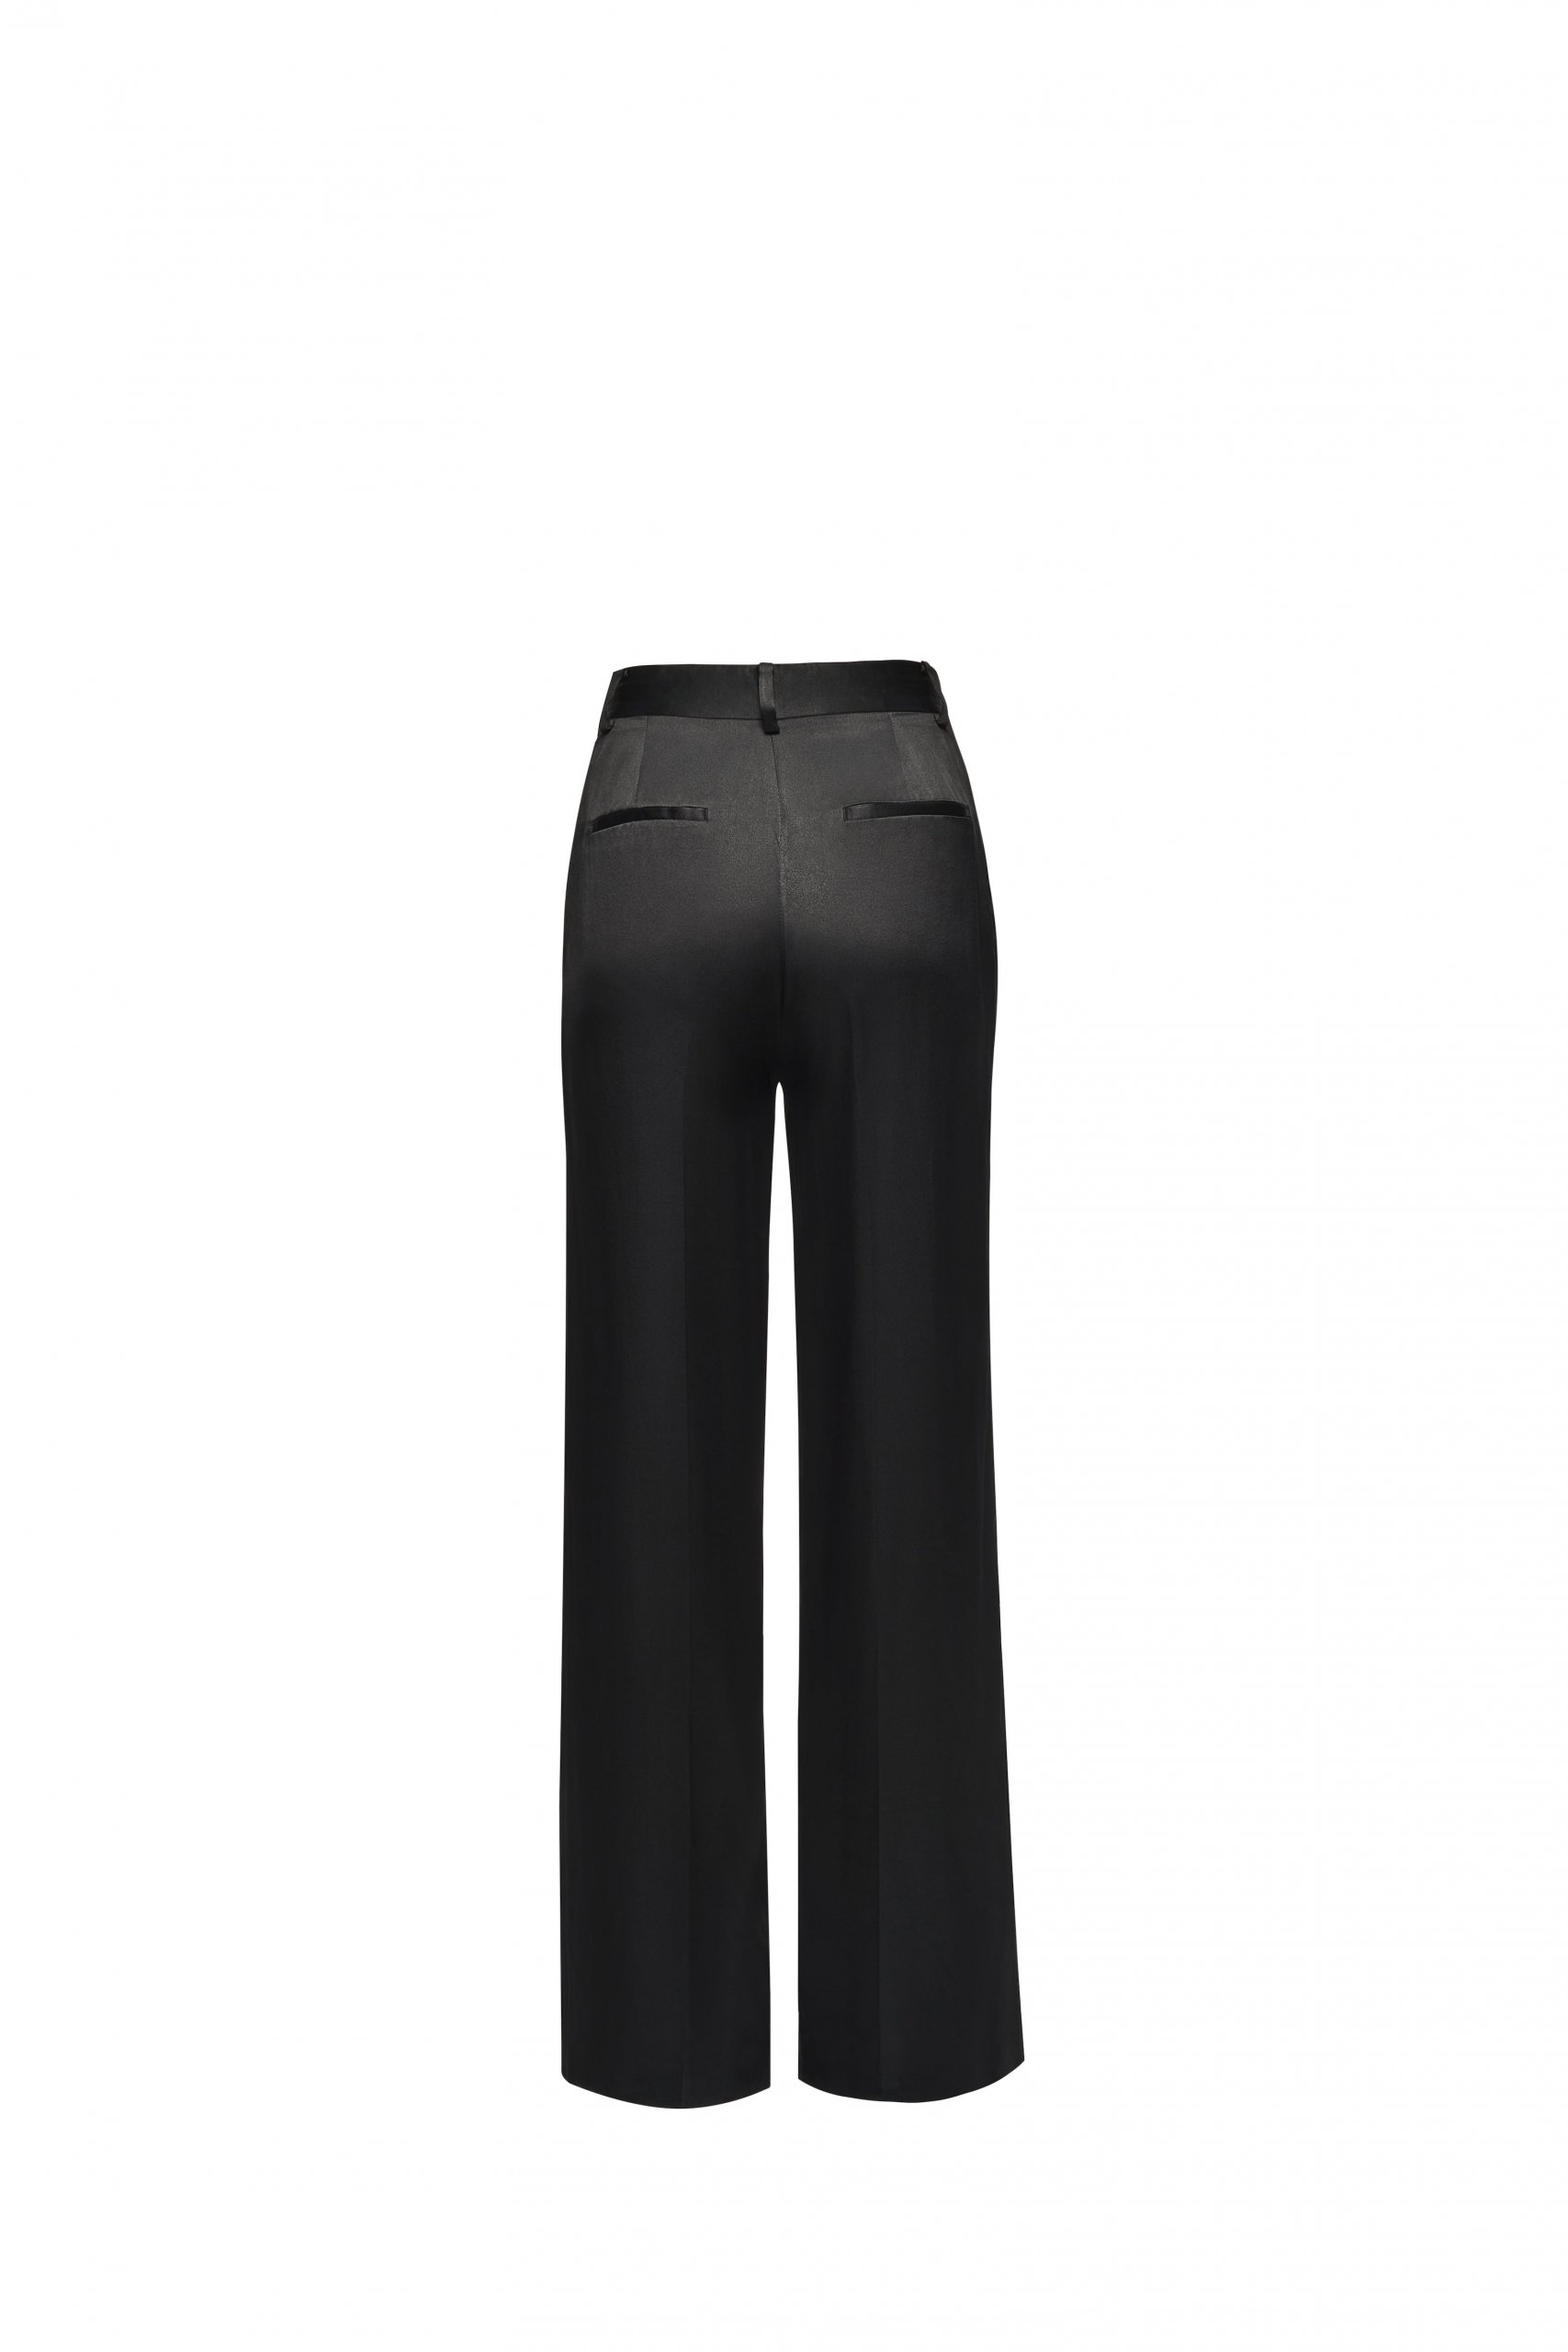 Jedwabne spodnie garniturowe black